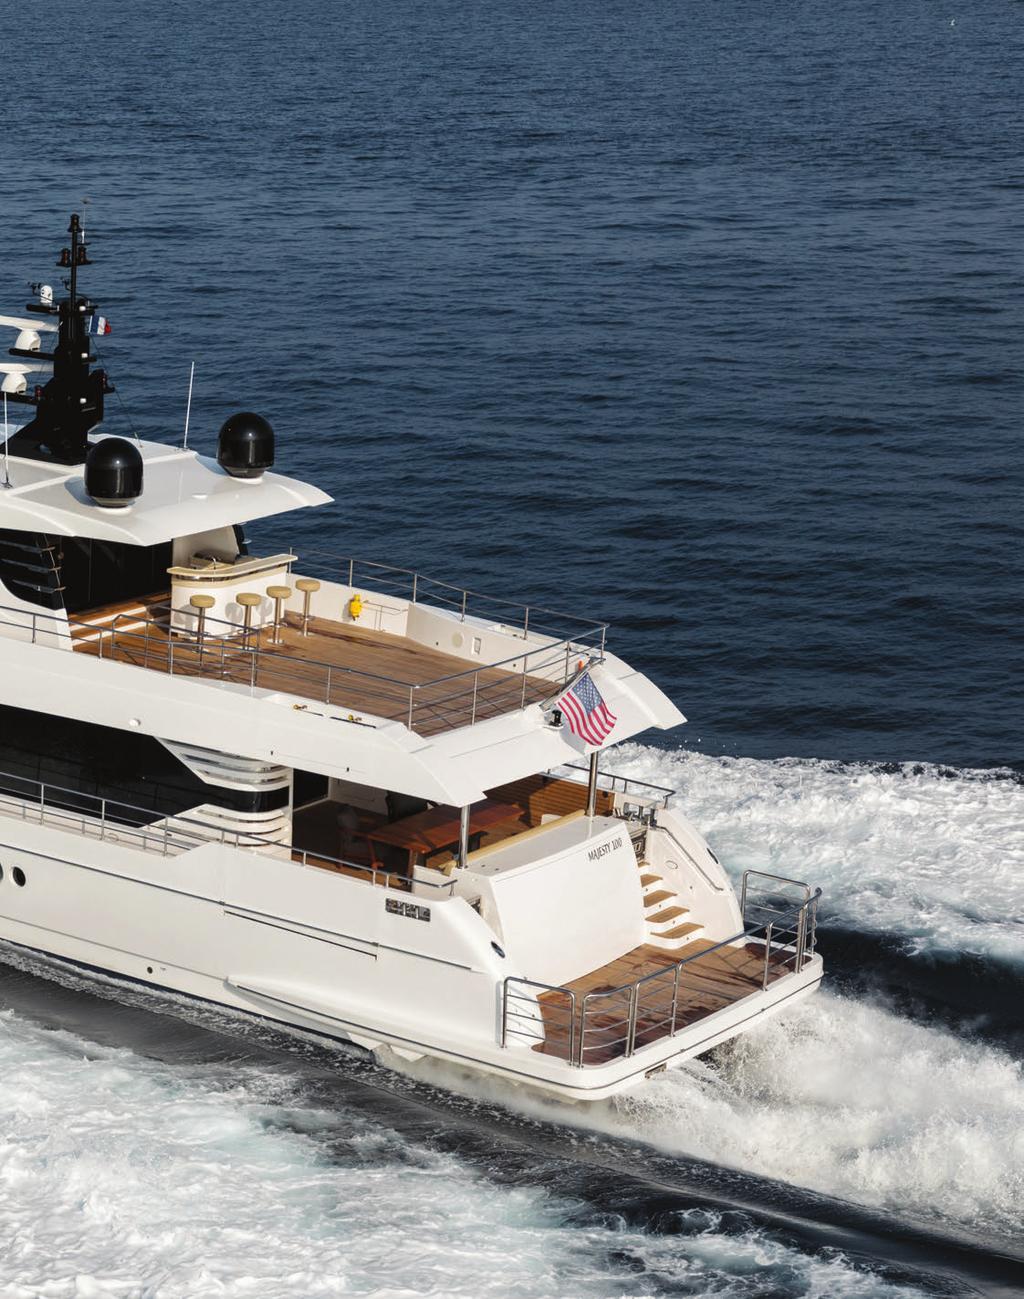 123 100 Majesty Yachts ın Monako da keşfetme fırsatı bulduğumuz en küçük modeli Majesty 100, tasarımıyla hem çok konforlu